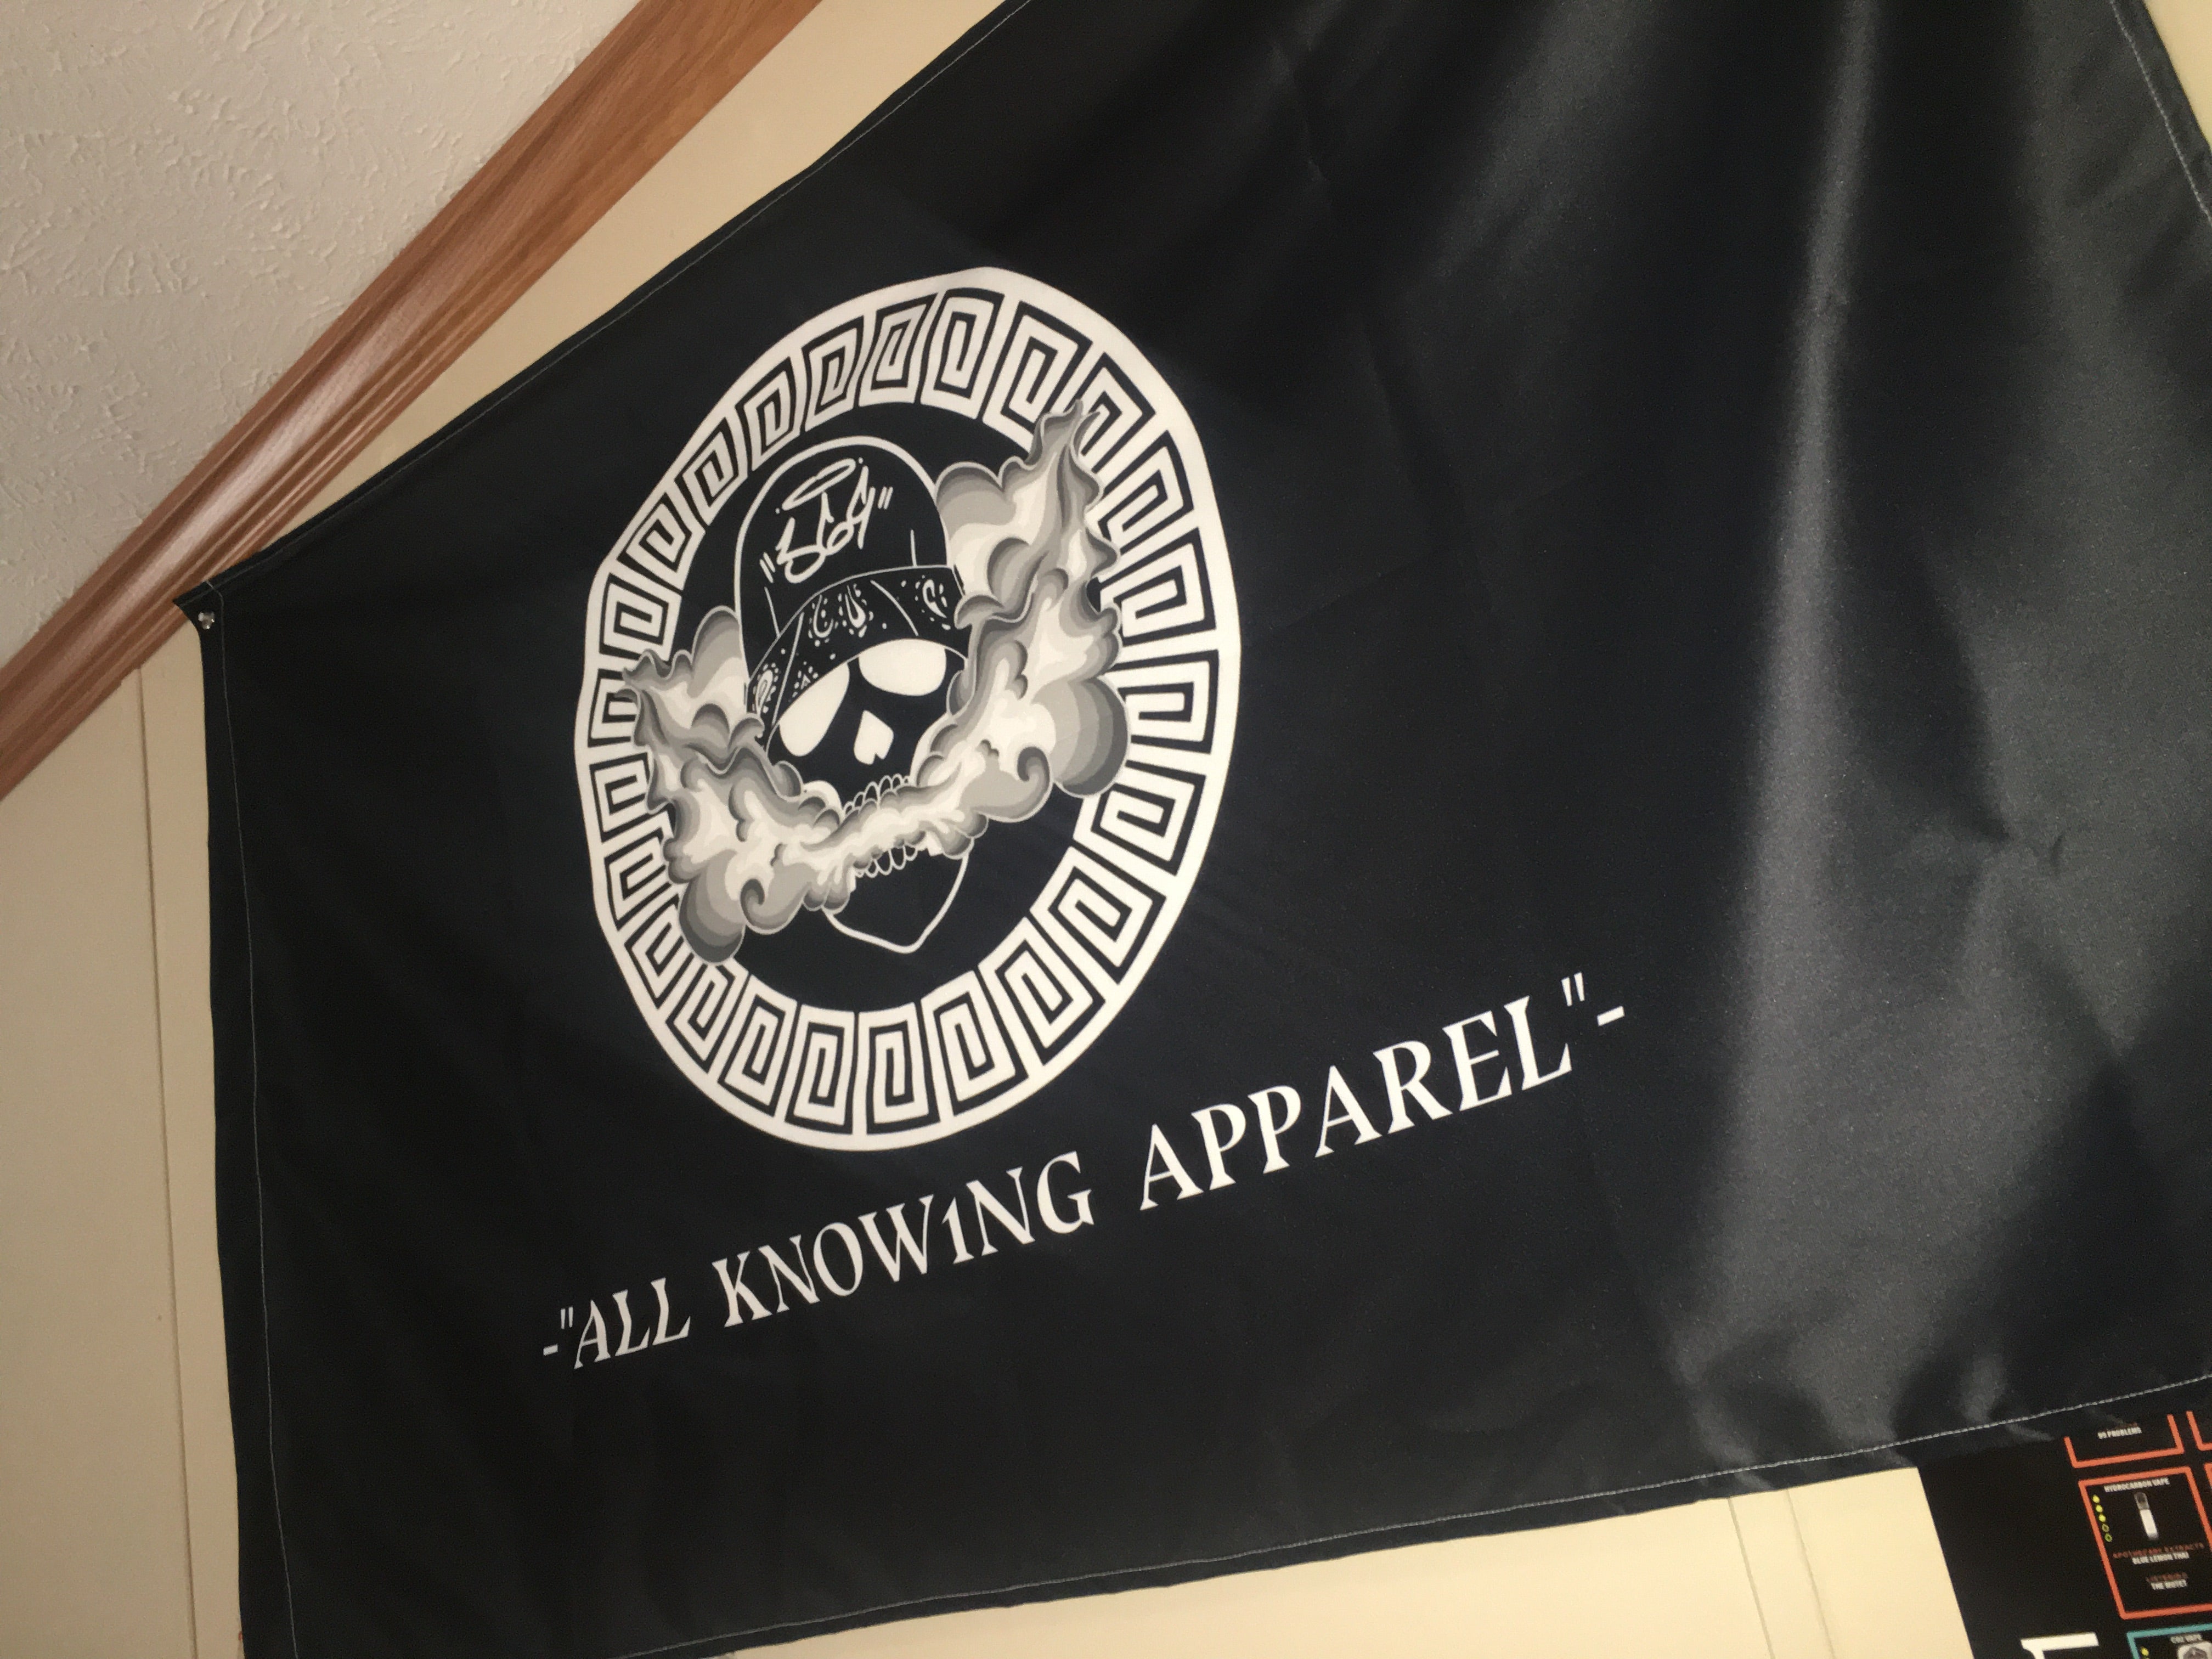 A.K.A Pirate Flag